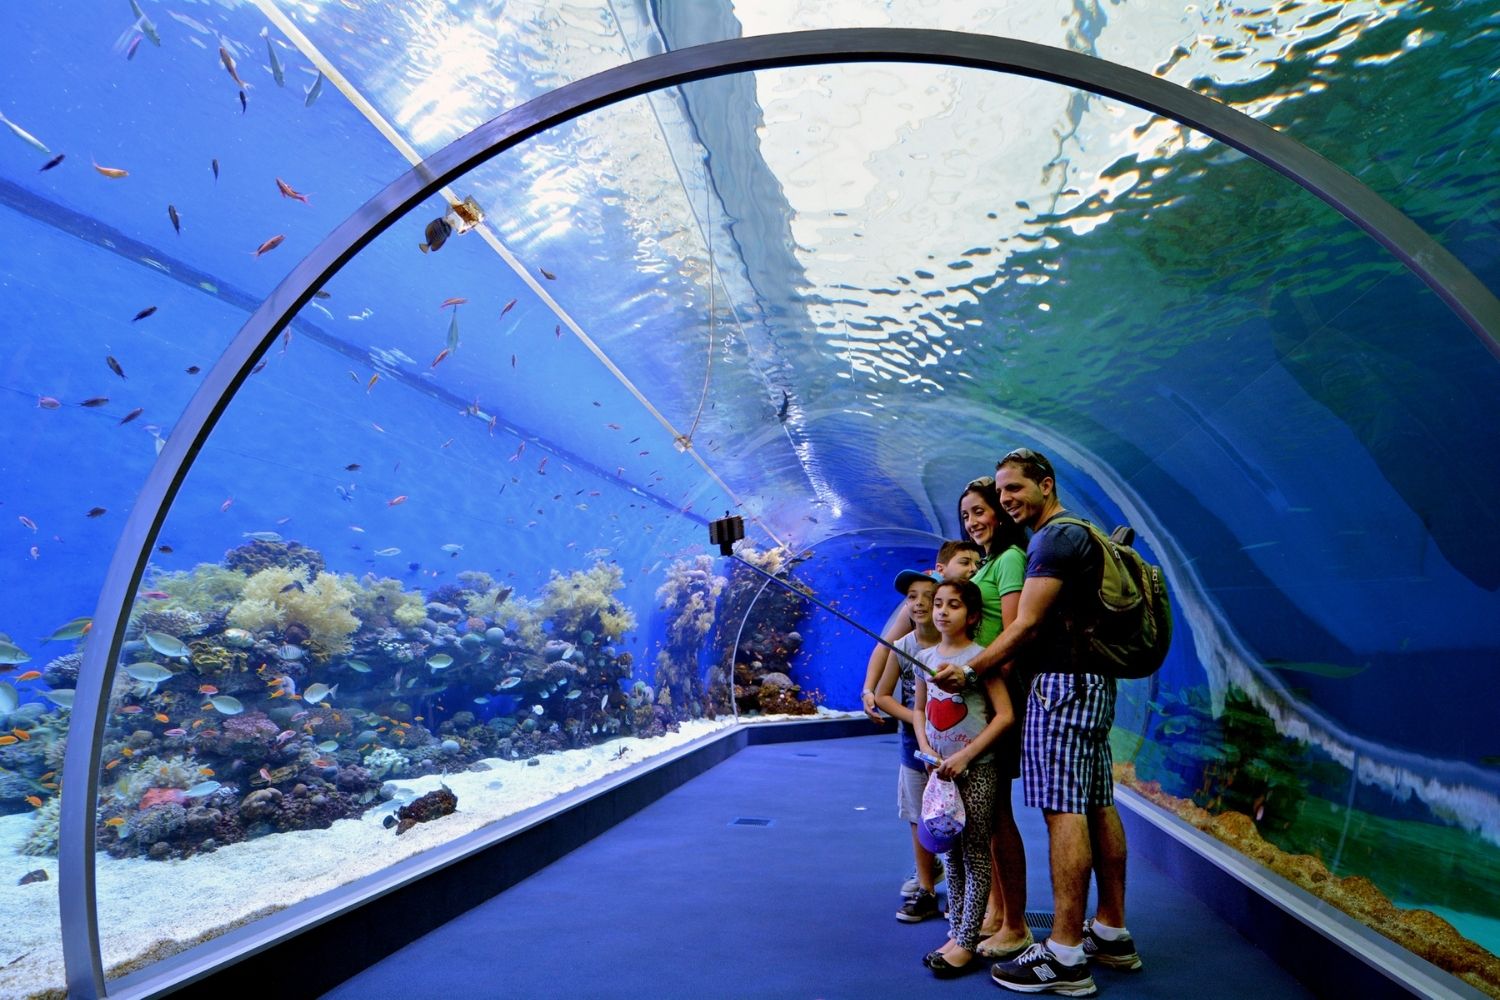 The top aquarium